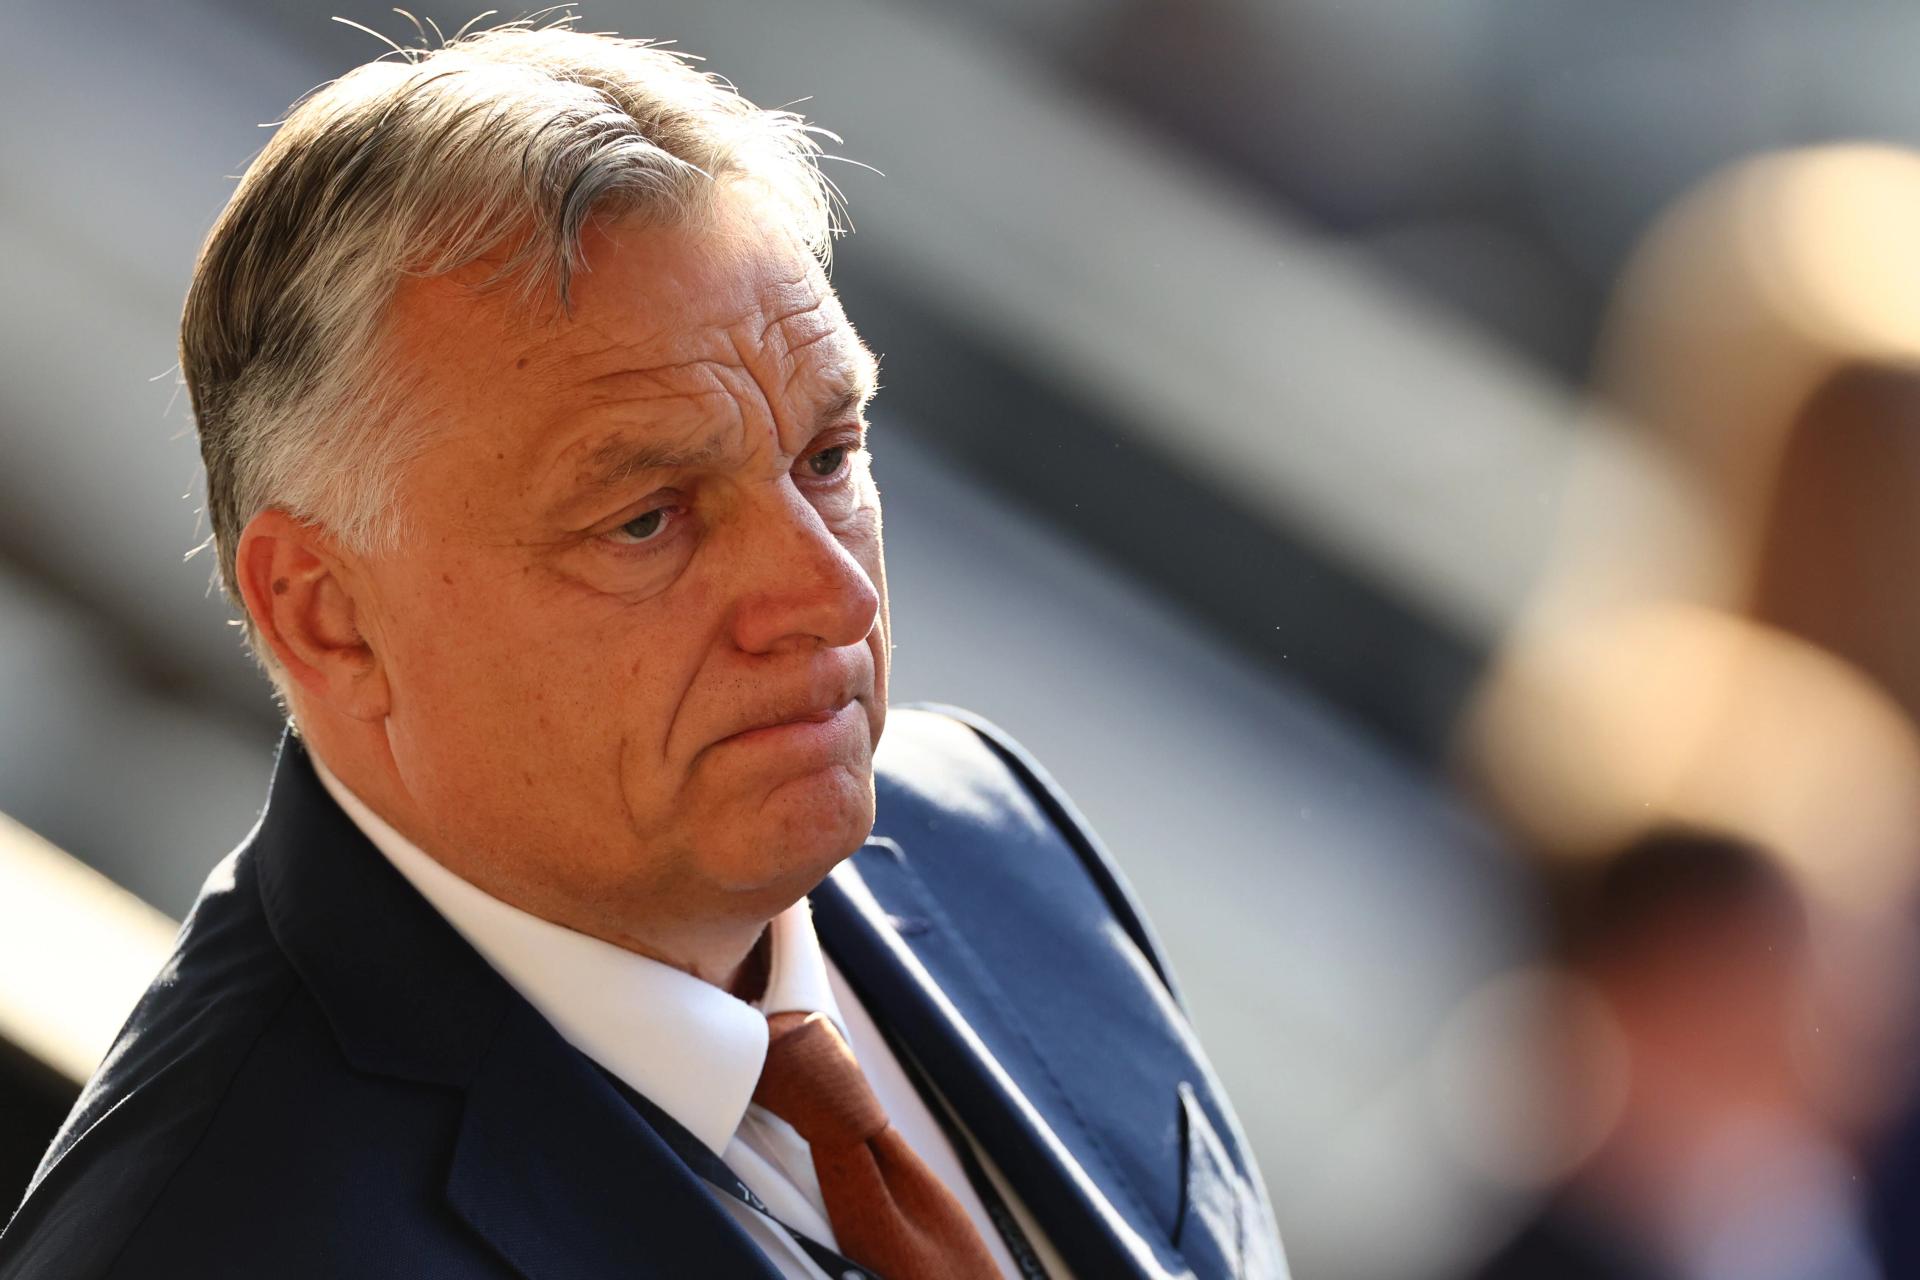 KE bojkotuje węgierską prezydencję. To przełom